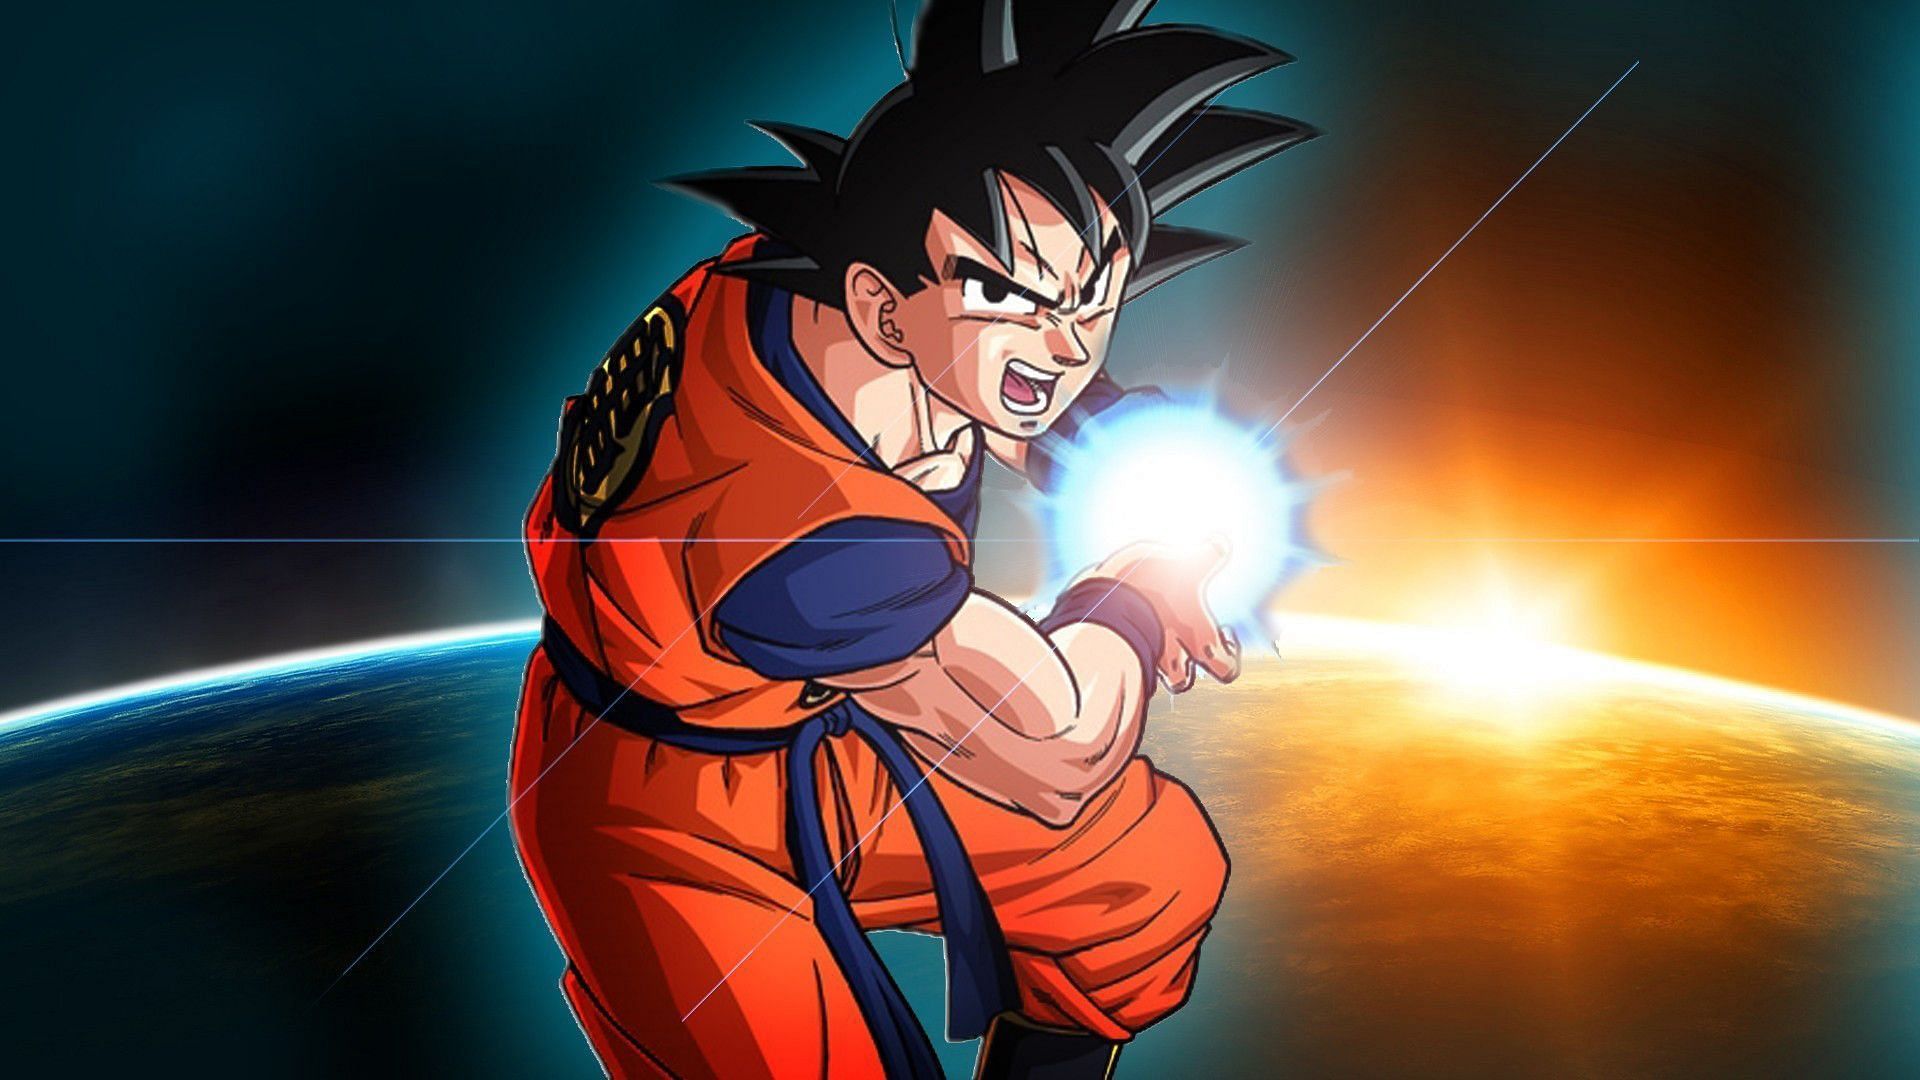 Son Goku/Kakarot (Image via Toei Animation)